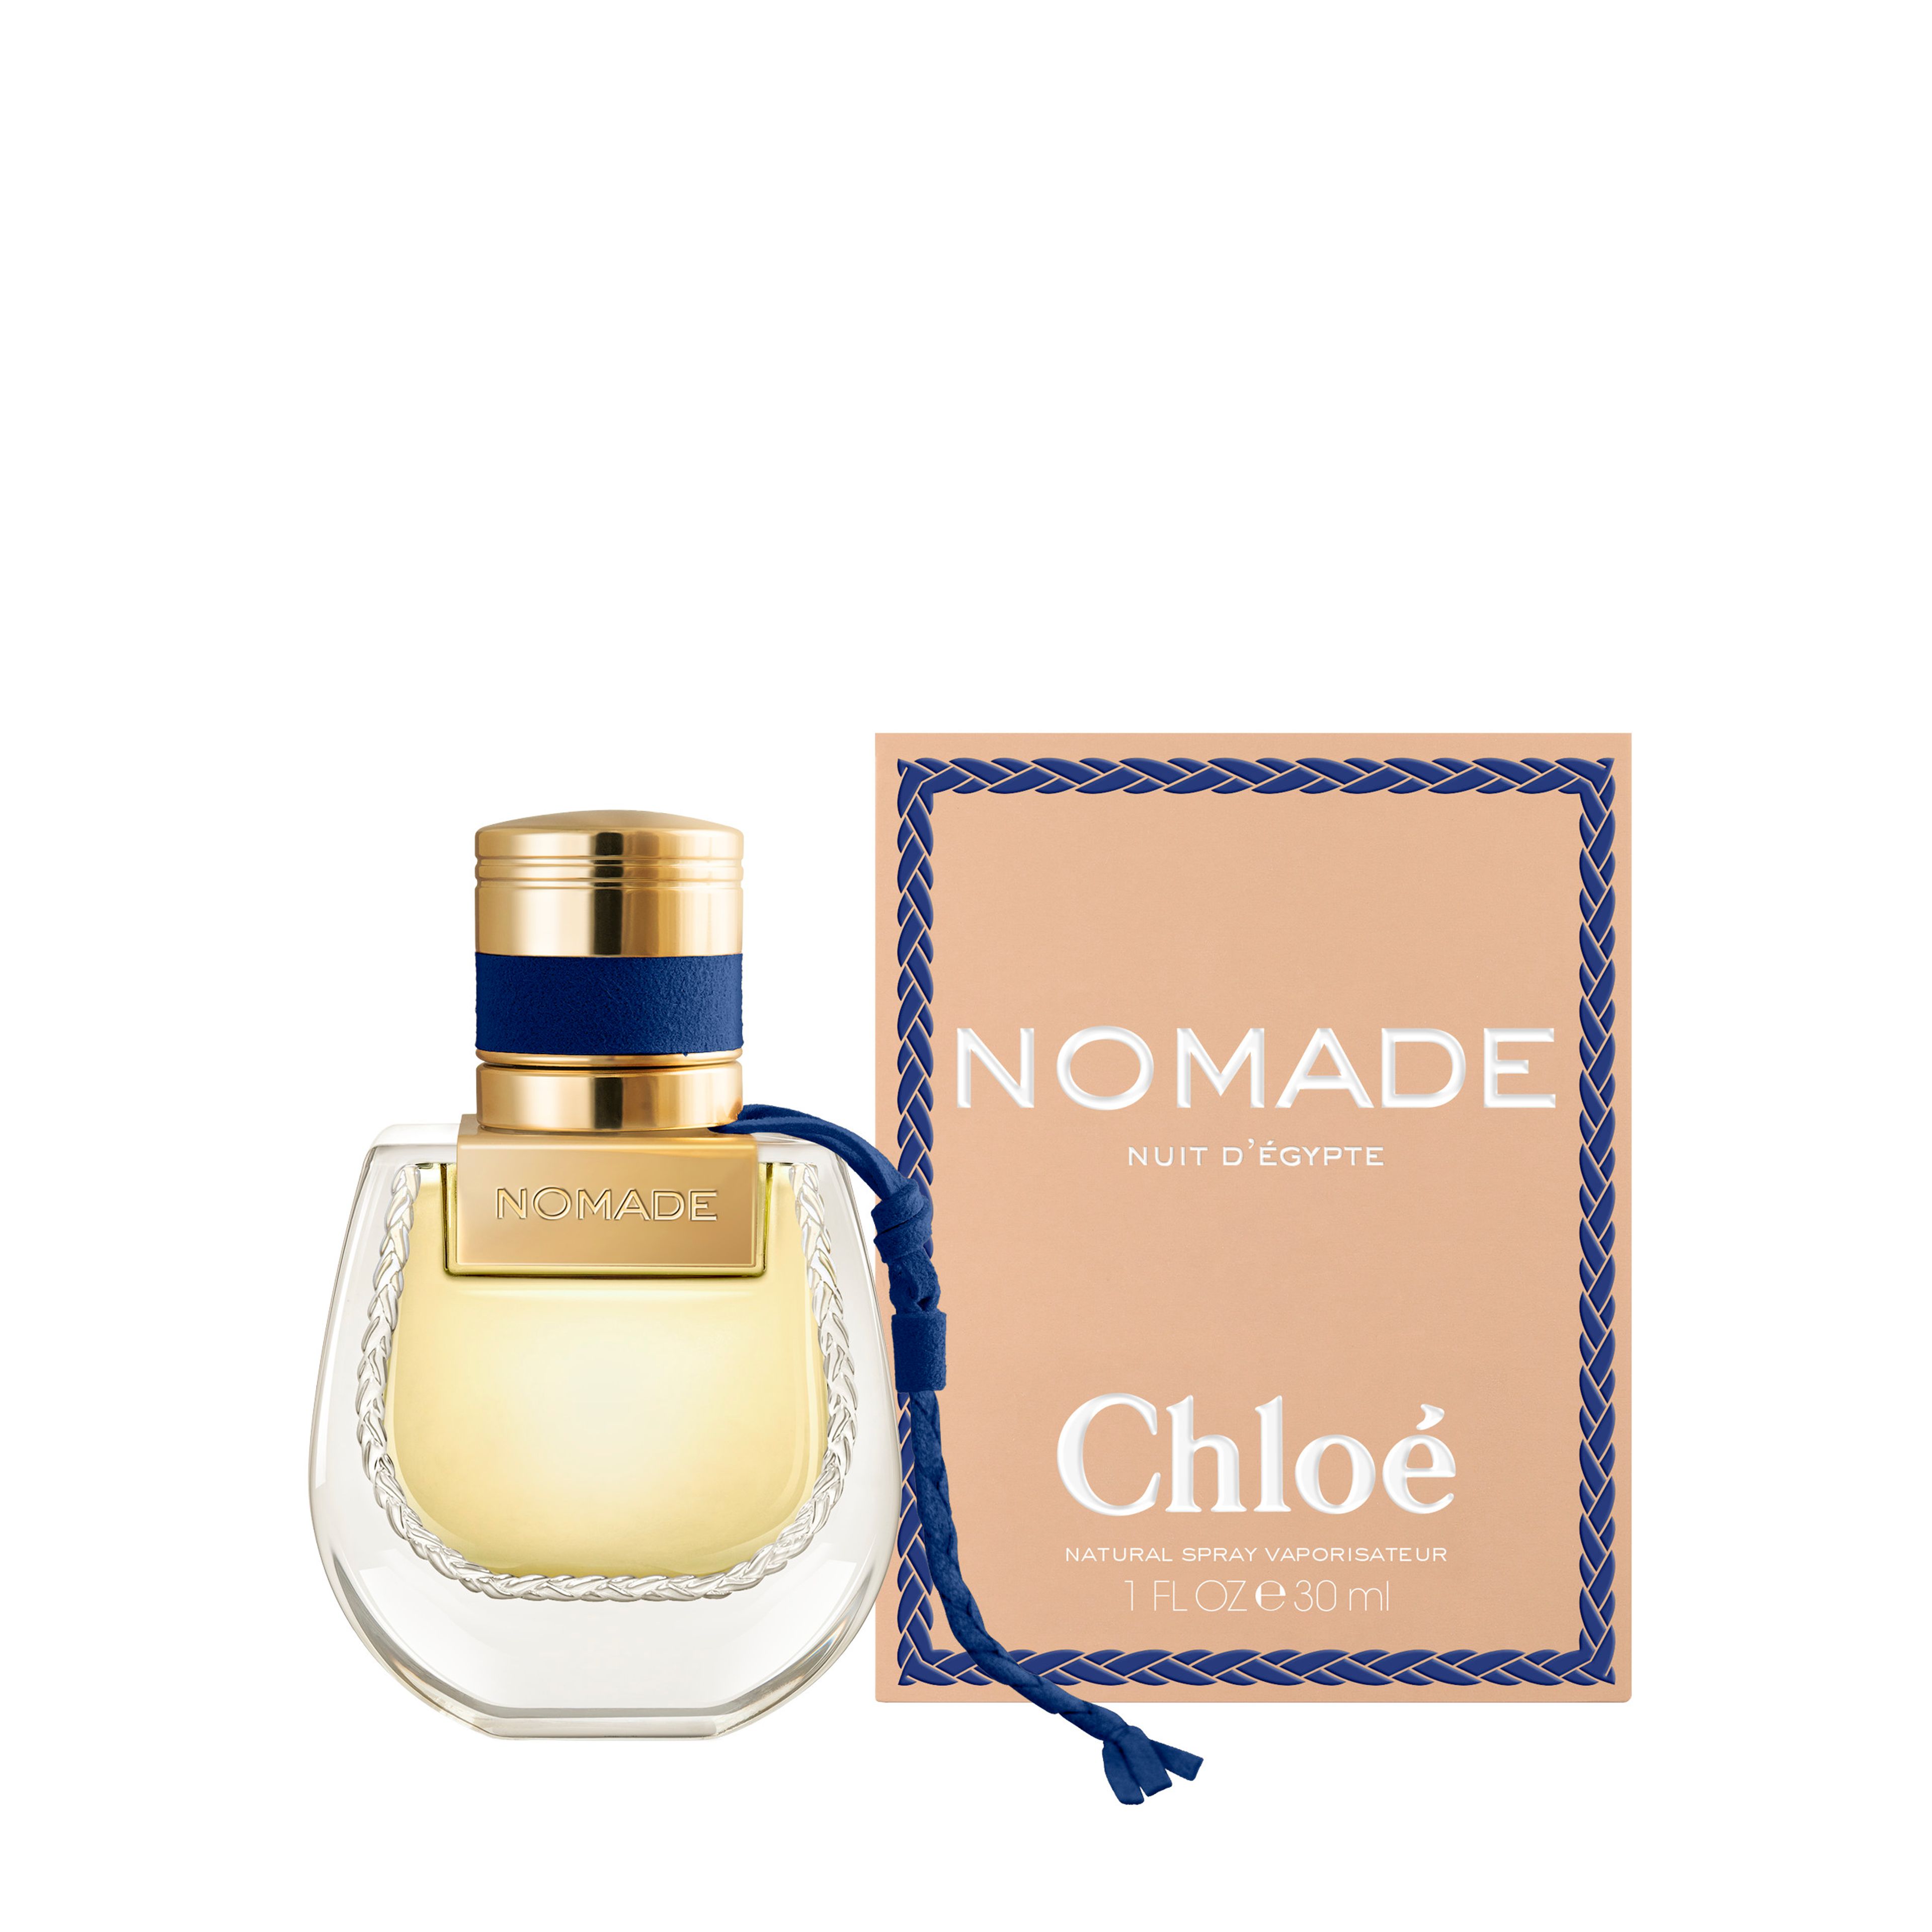 Chloé Chloé Nomade Nuit D’egypte Eau De Parfum 2